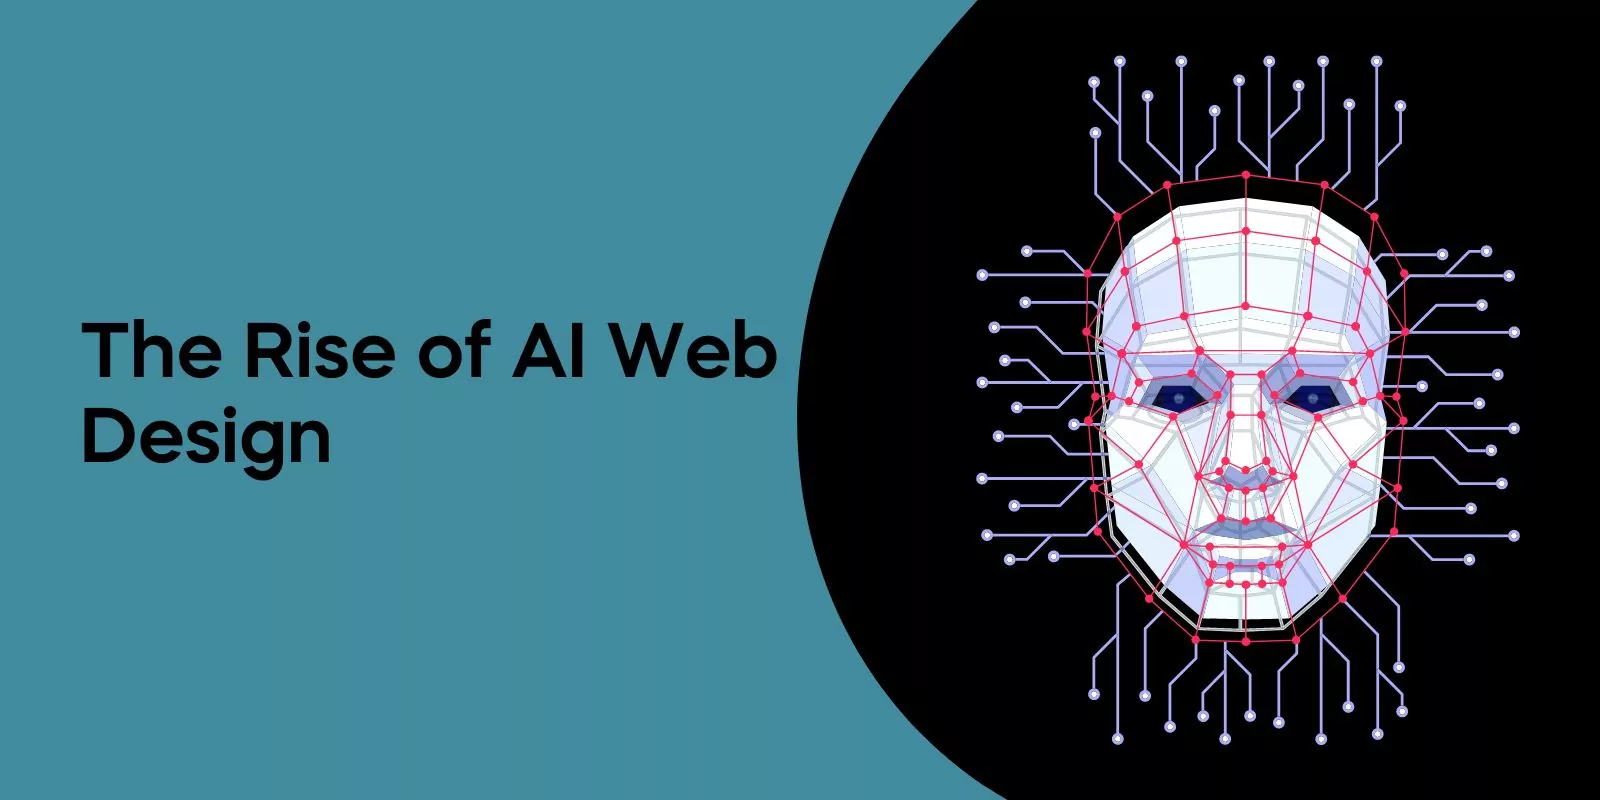 The Rise of AI Web Design